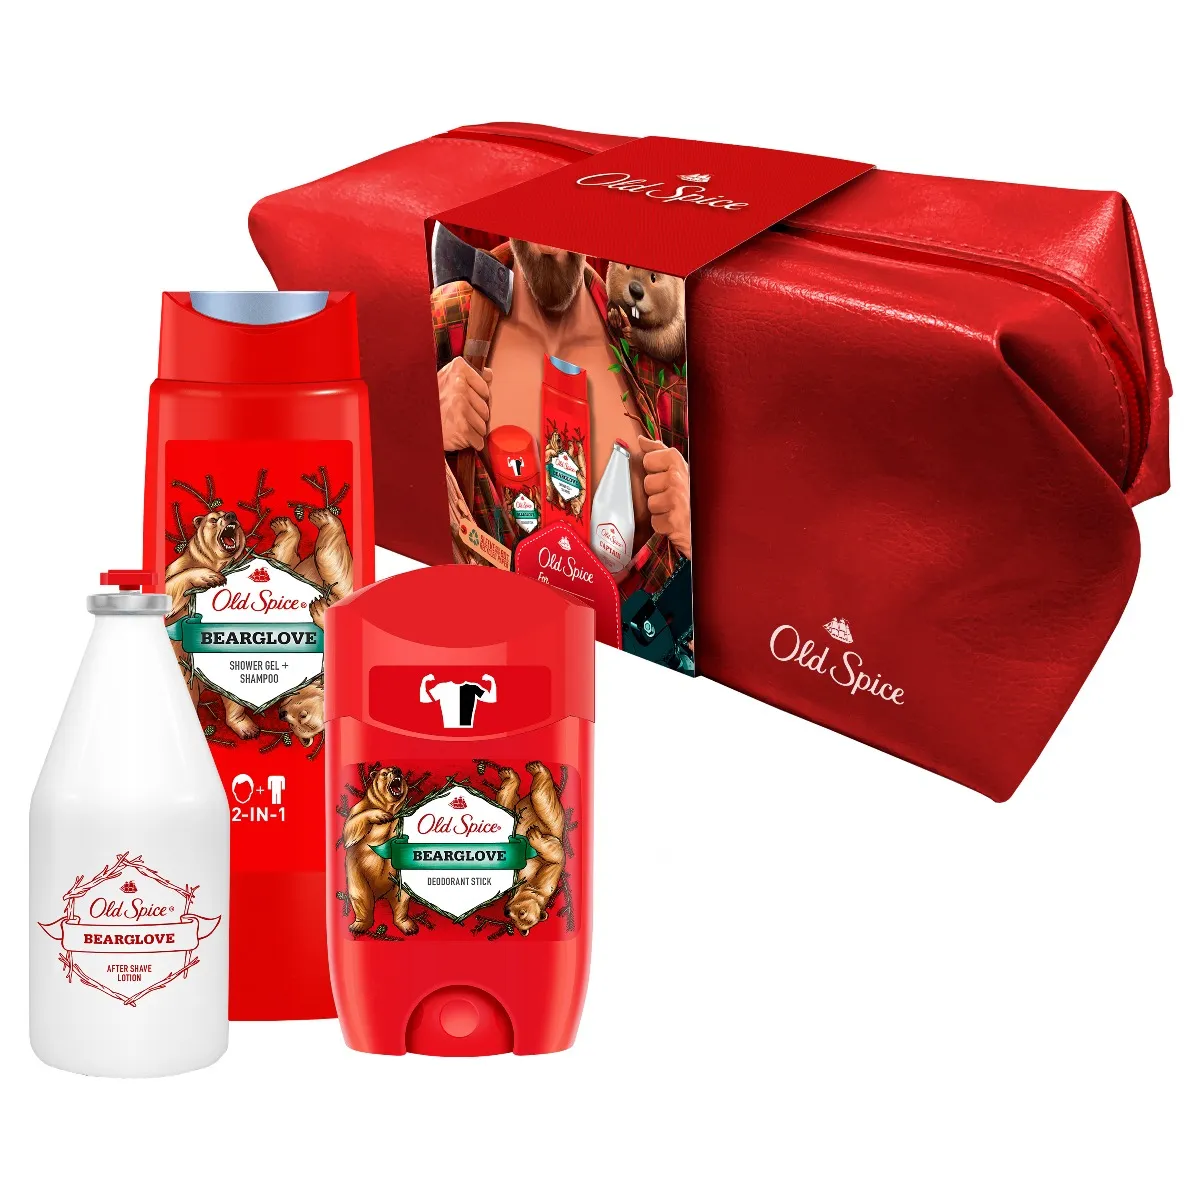 Old Spice Vianočné balenie BEAR STICK 1×1 set, sprchový gél 2v1 + dezodorant + voda po holení + taška